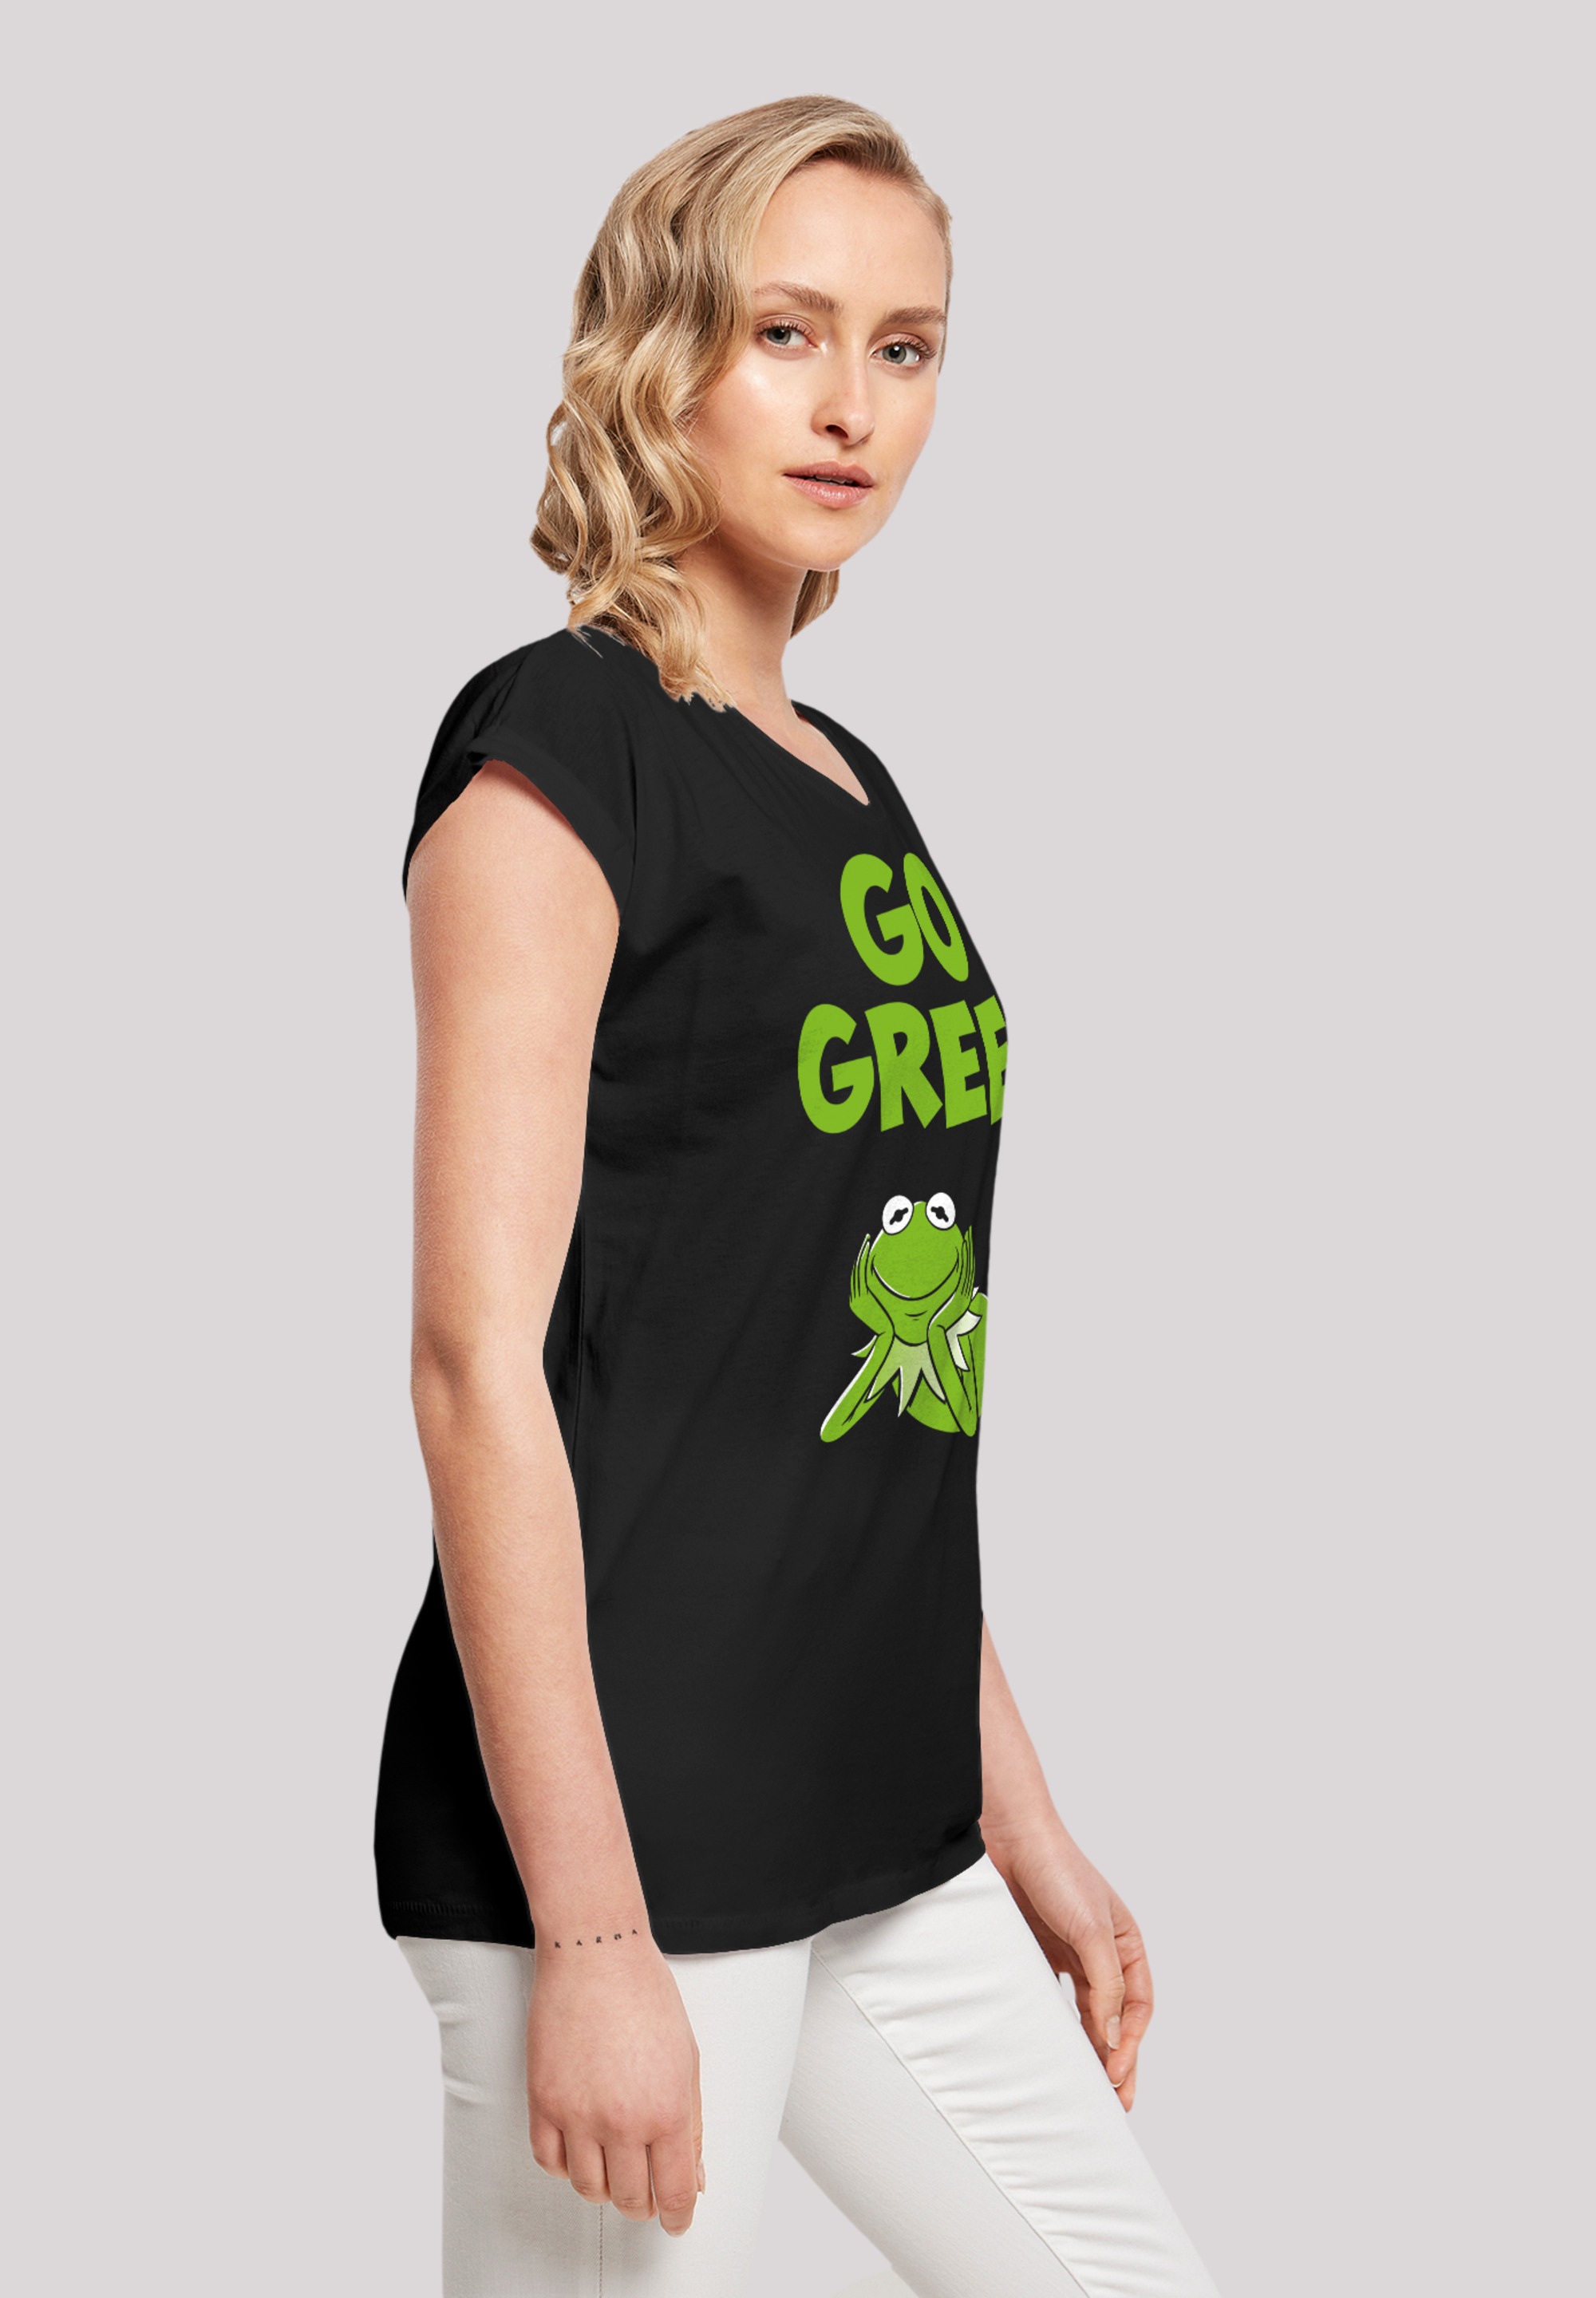 F4NT4STIC T-Shirt »Disney Muppets Go Green«, Premium Qualität online kaufen  | I'm walking